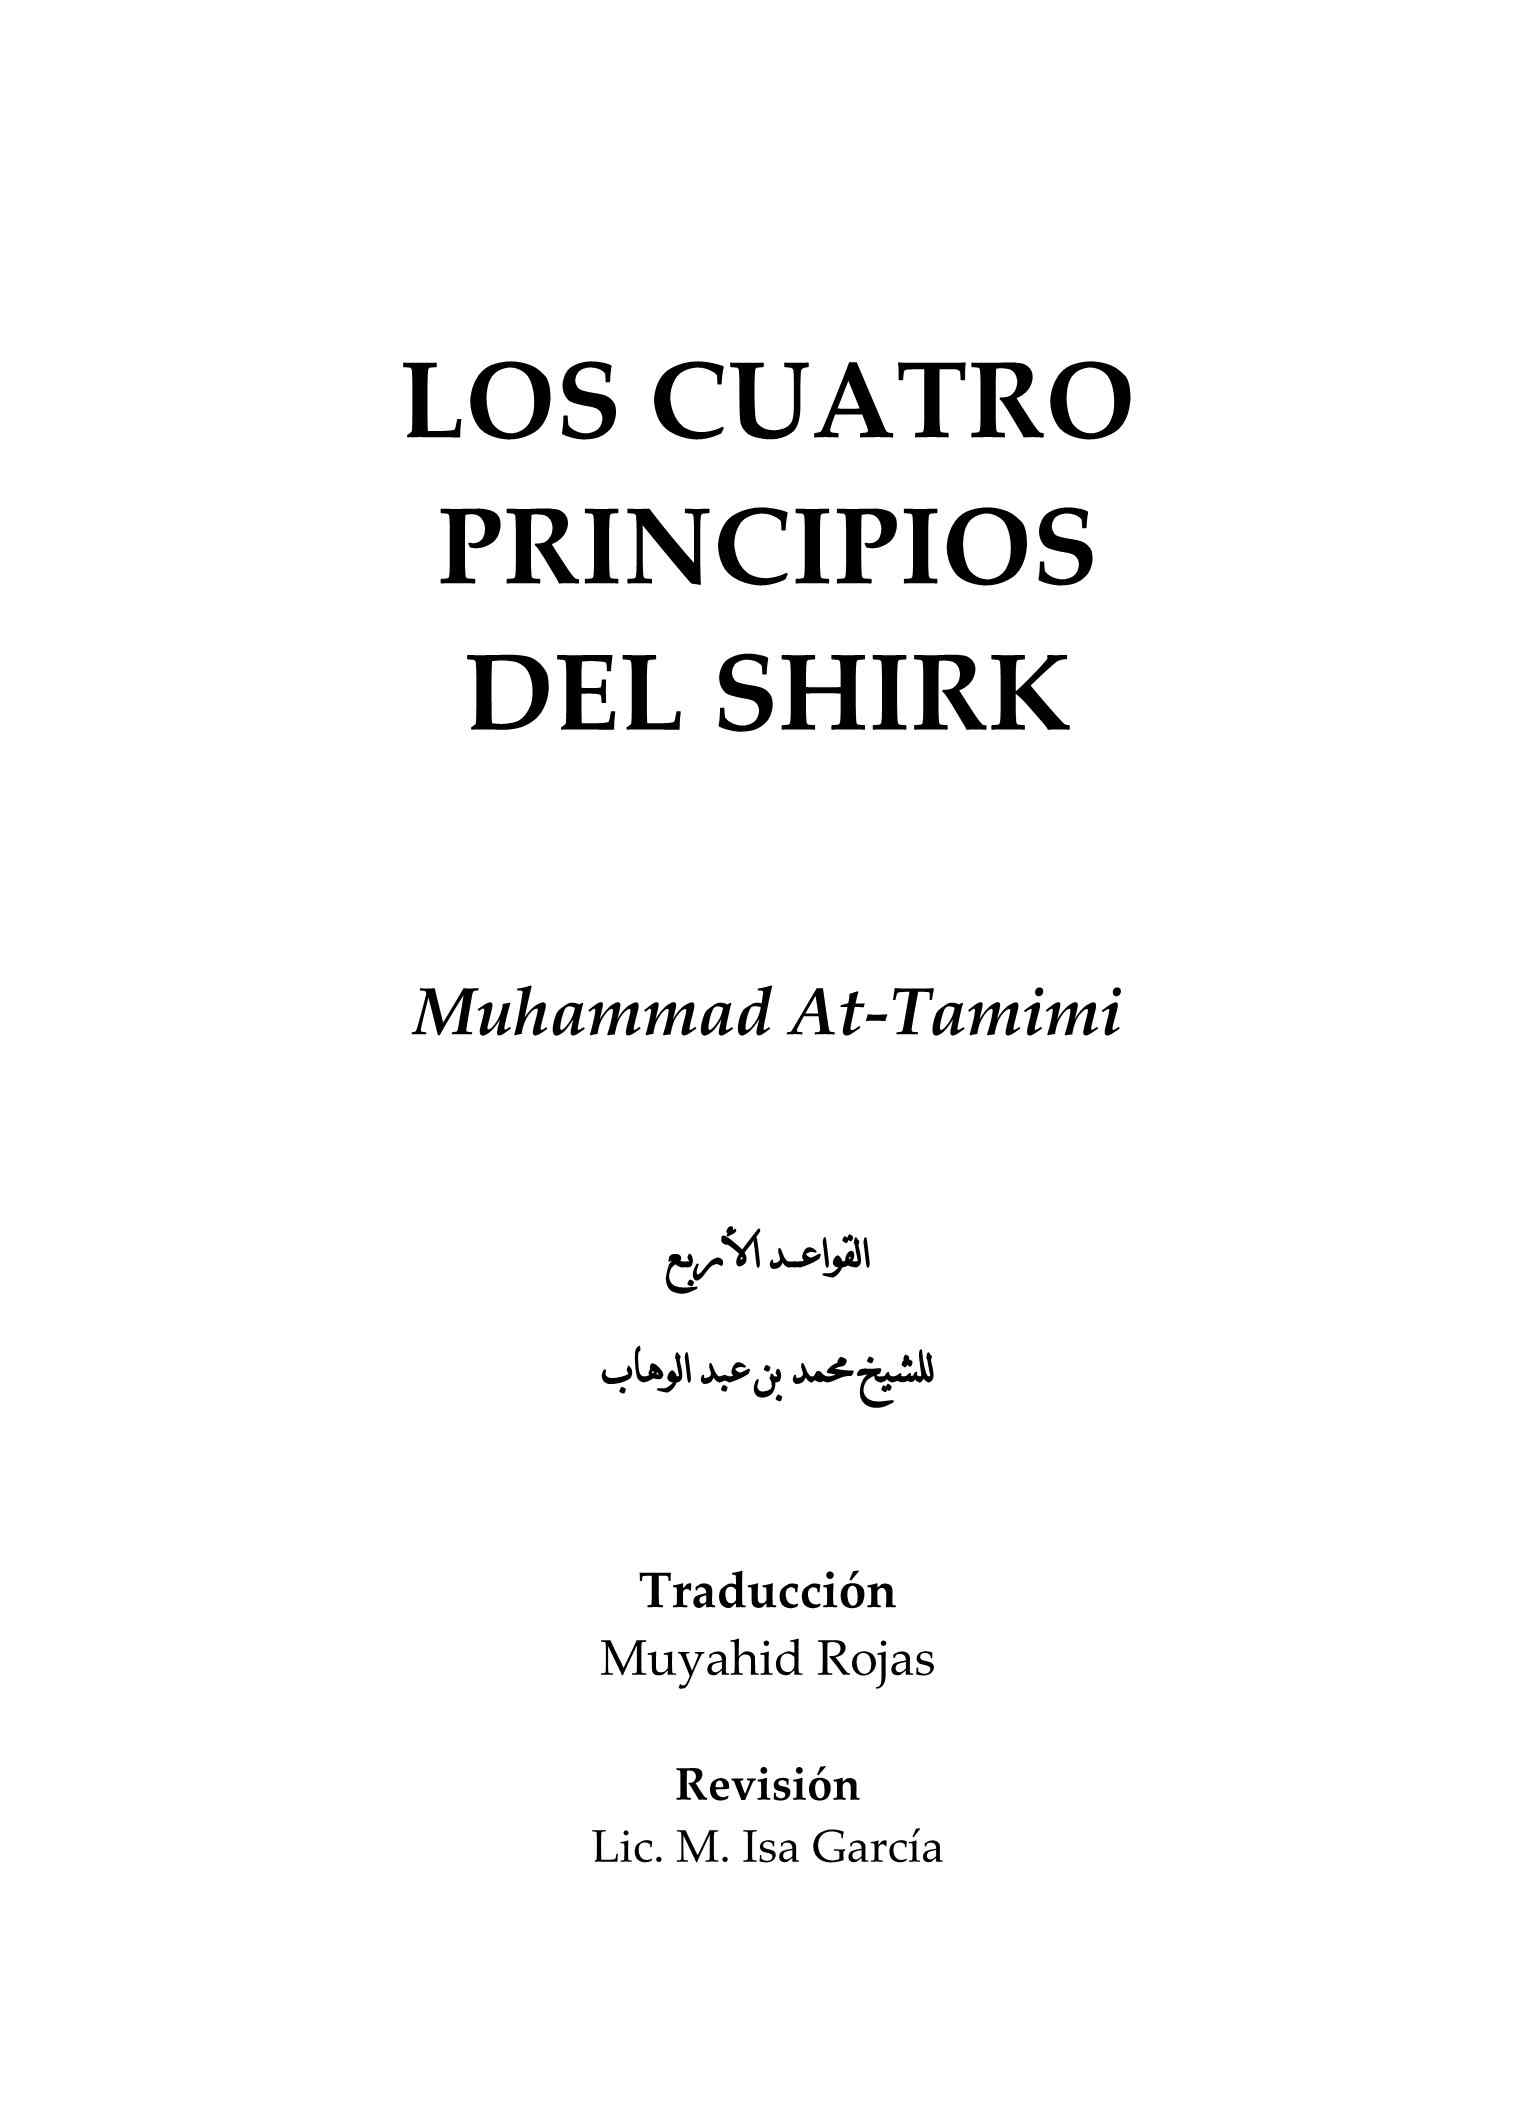 إسباني - القواعد الأربع - Los Cuatro Principios del Shirk.pdf, 51-Sayfa 